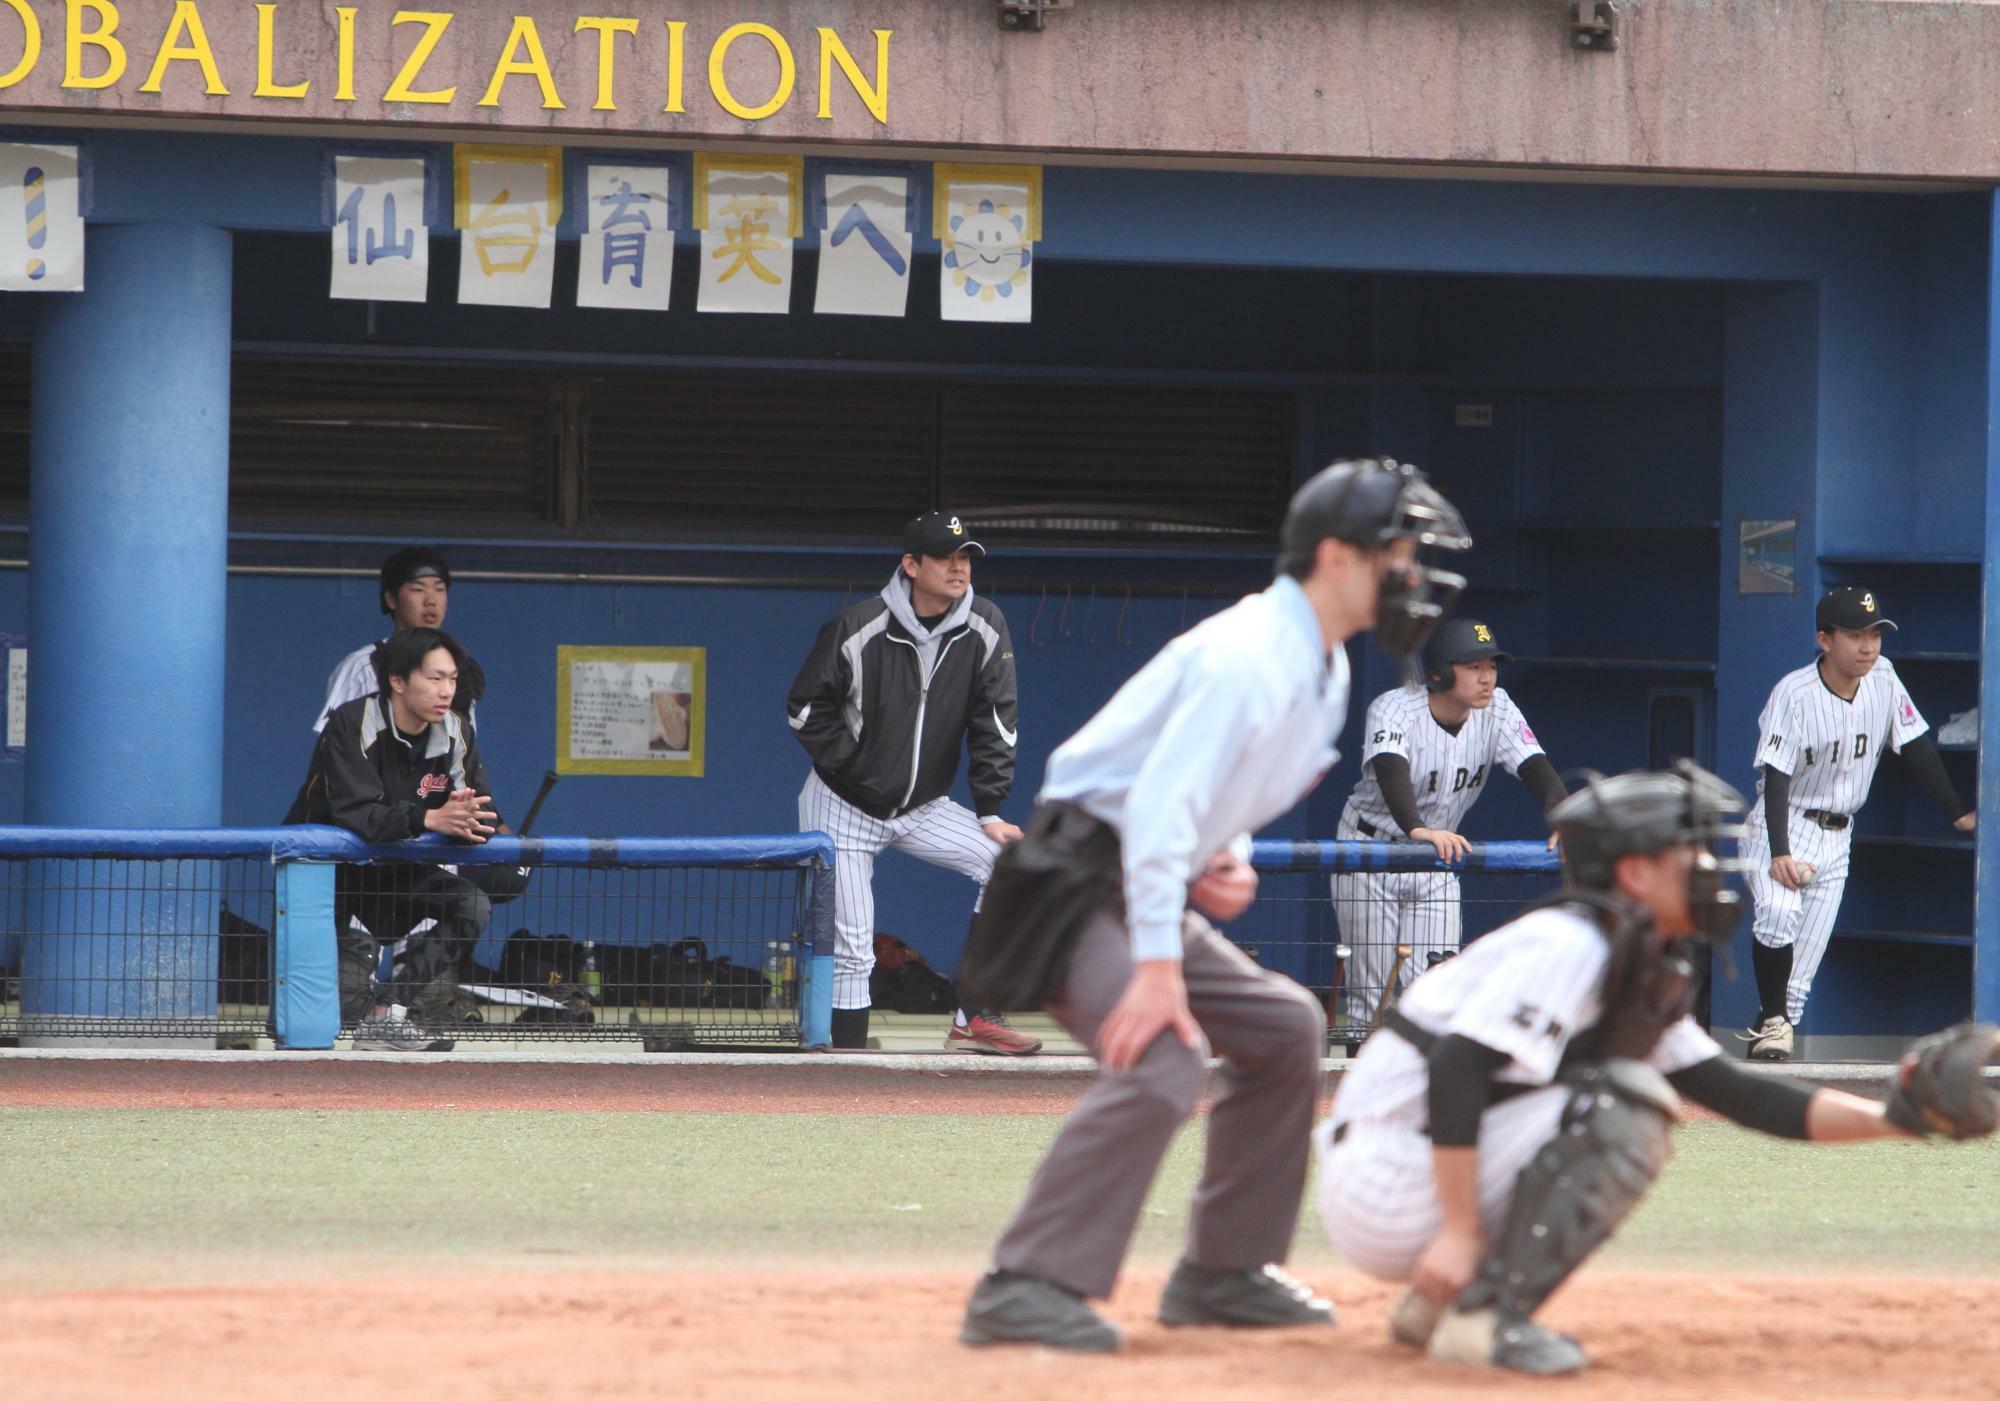 飯田・笛木監督は4月から金沢西に異動するため、飯田で最後の試合になった